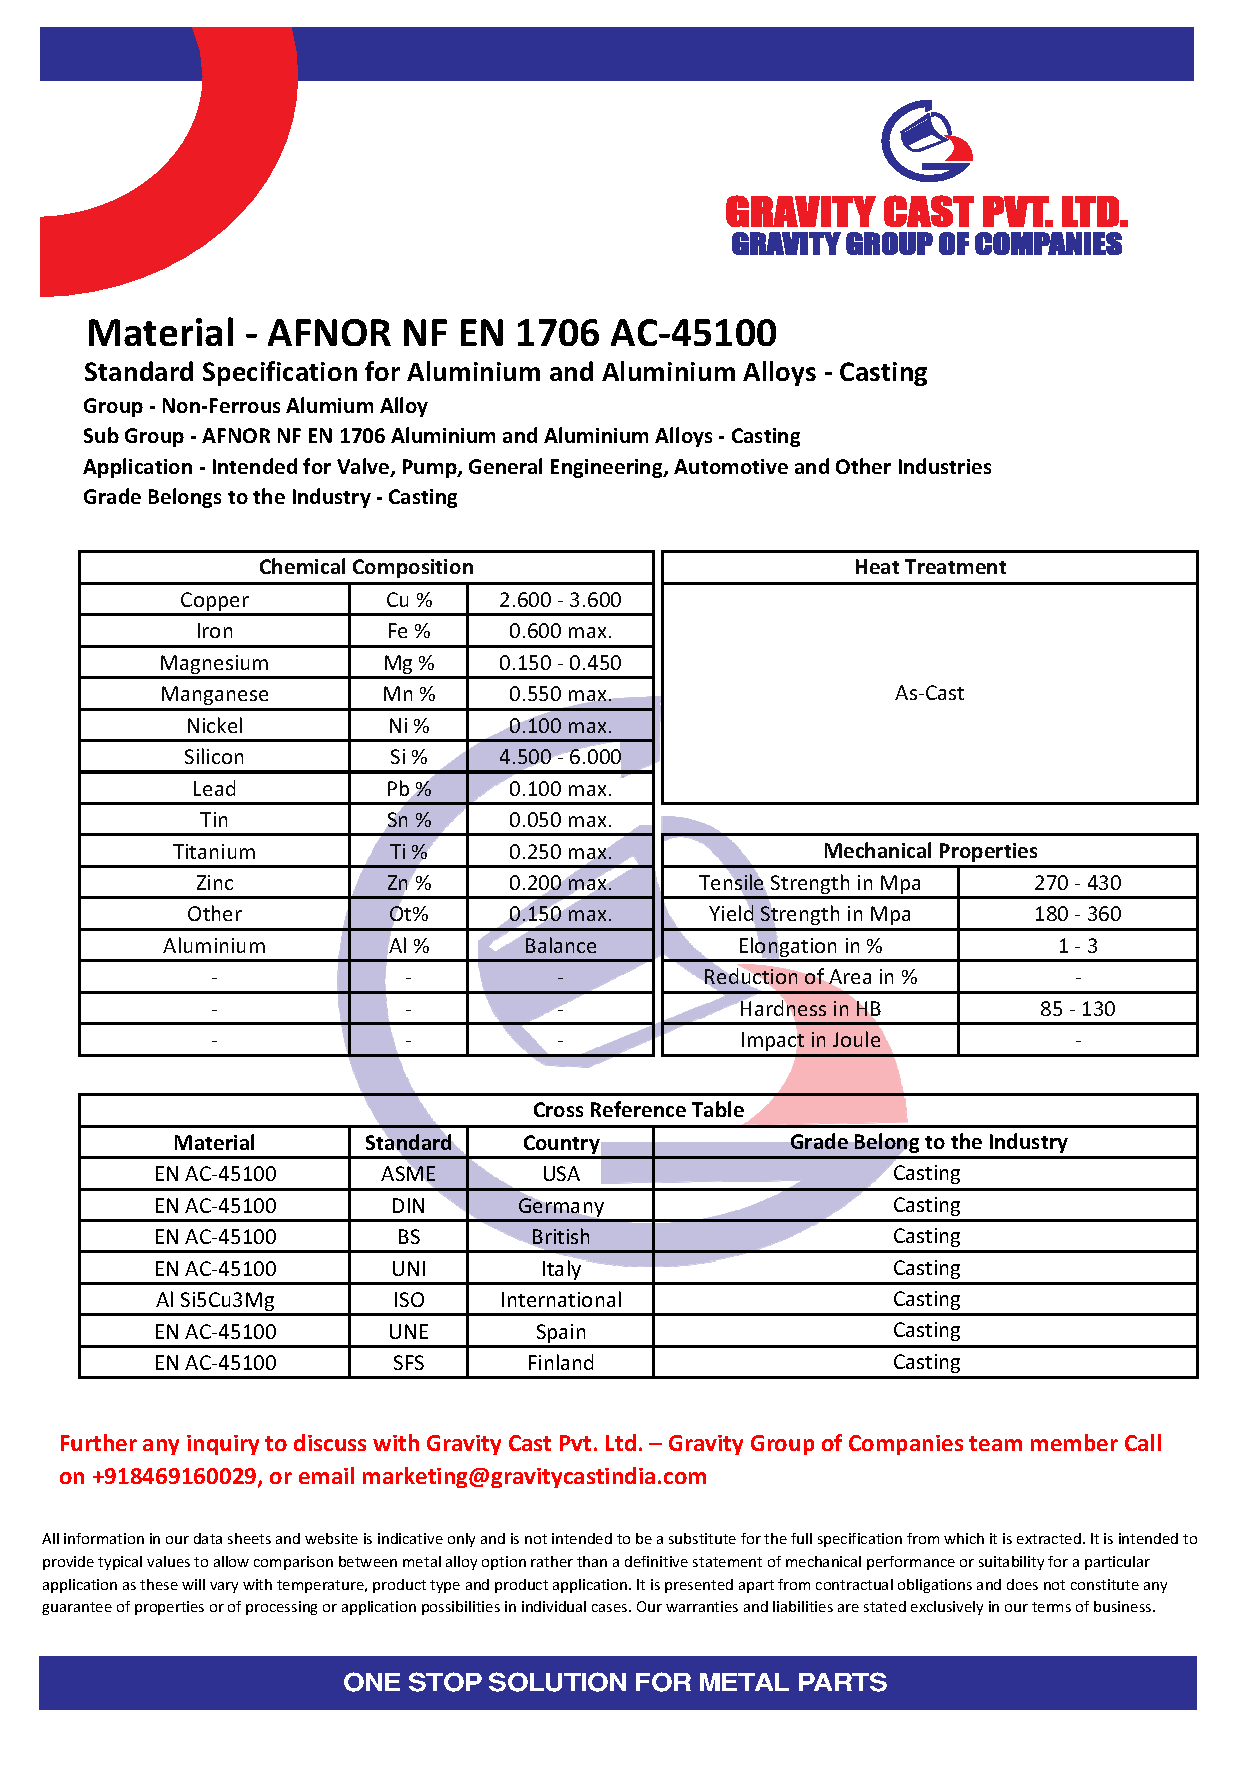 AFNOR NF EN 1706 AC-45100.pdf